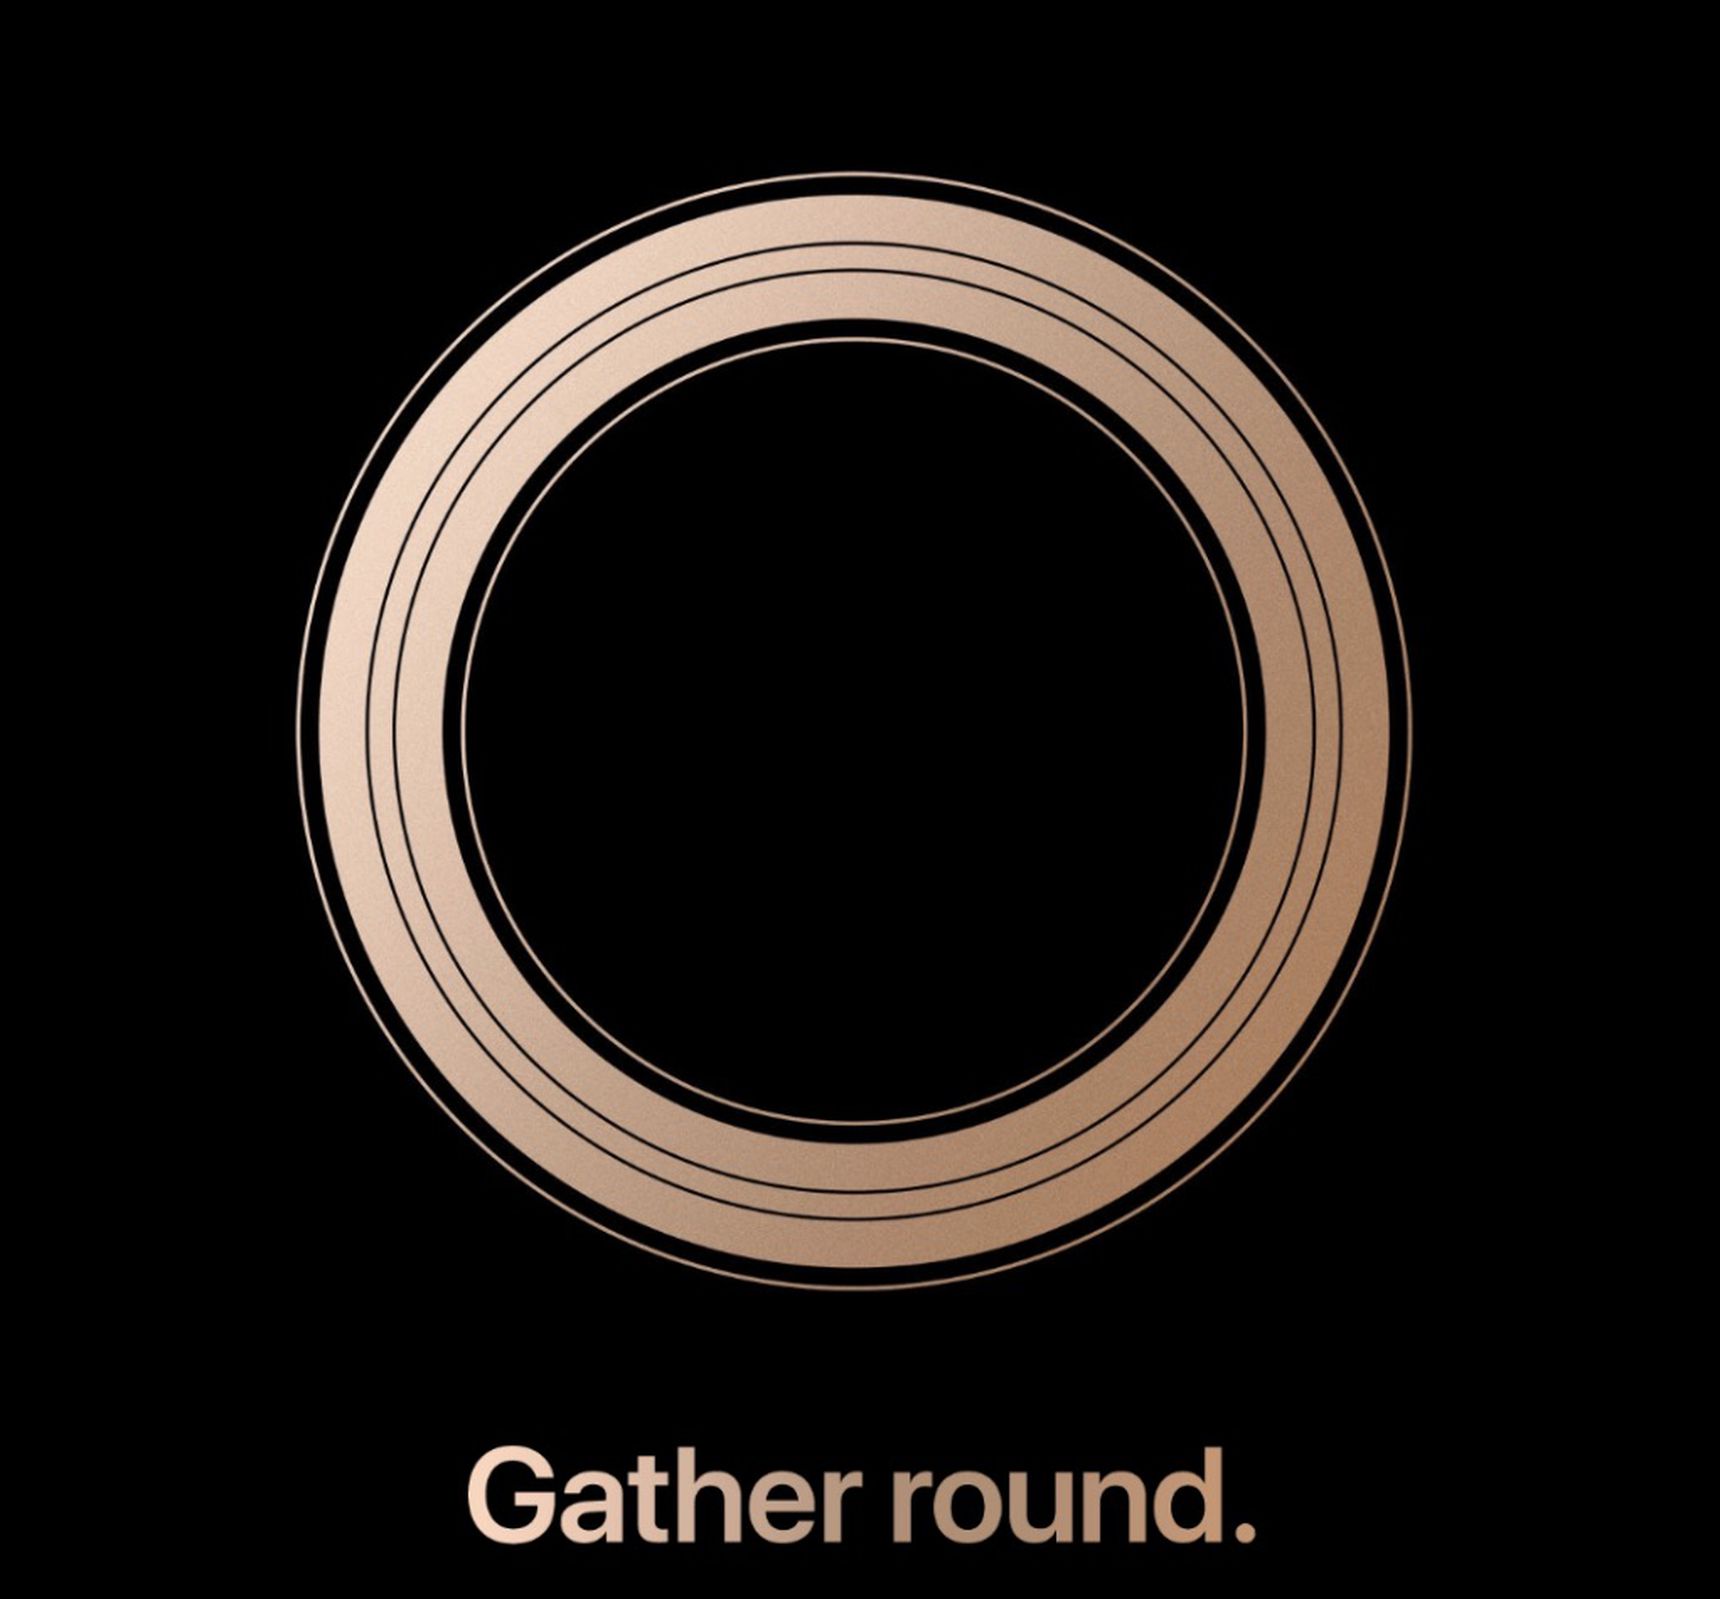 Apple's fall 2018 event invite